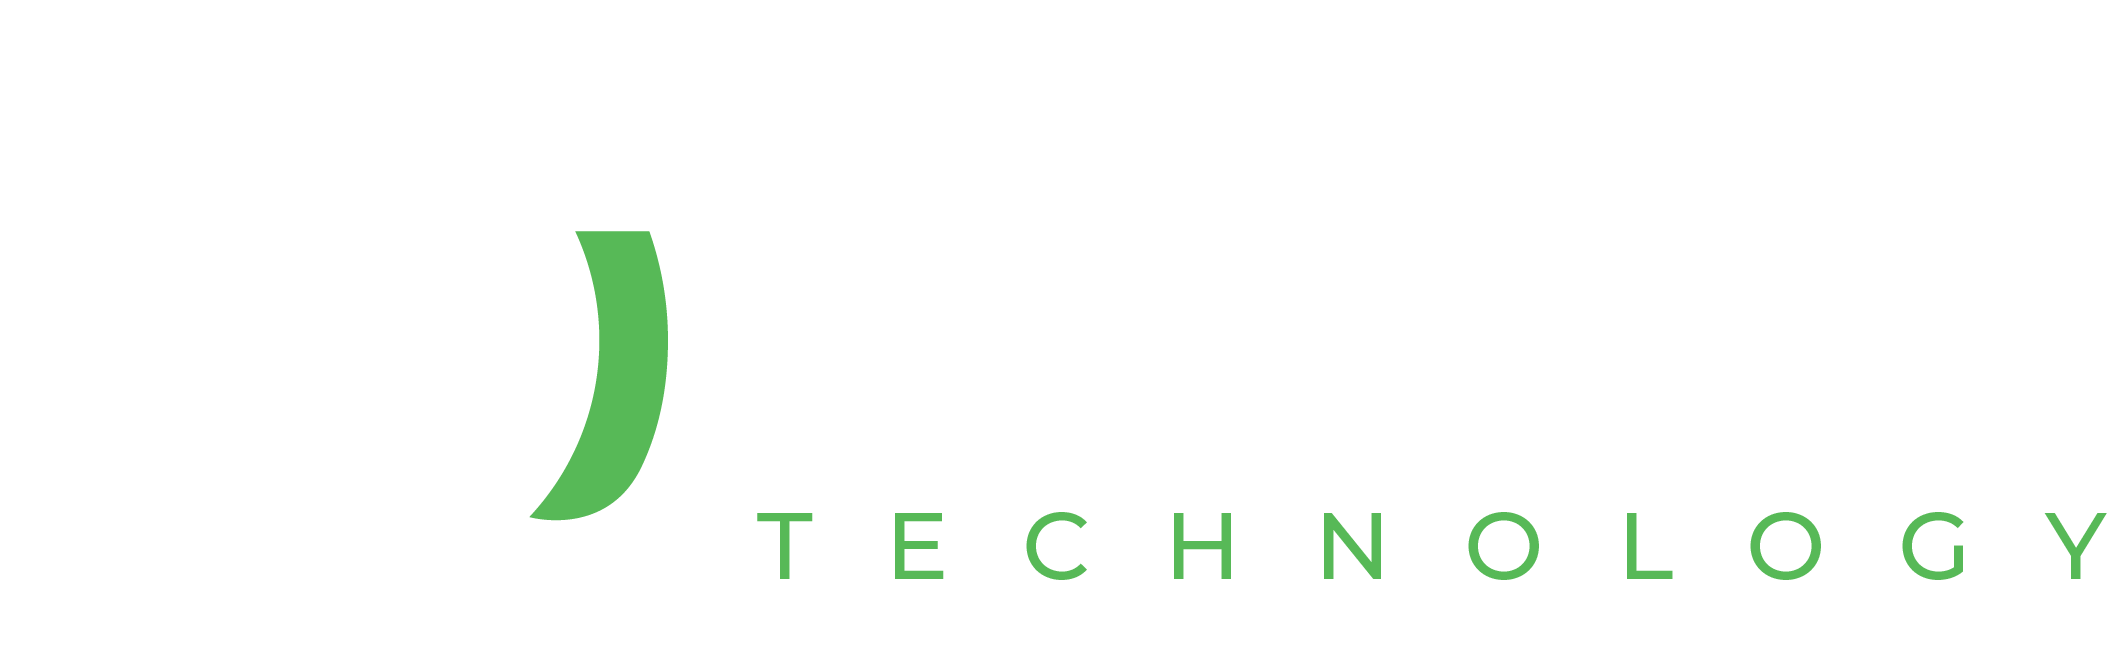 Home | Ram Technology - Ram Technology